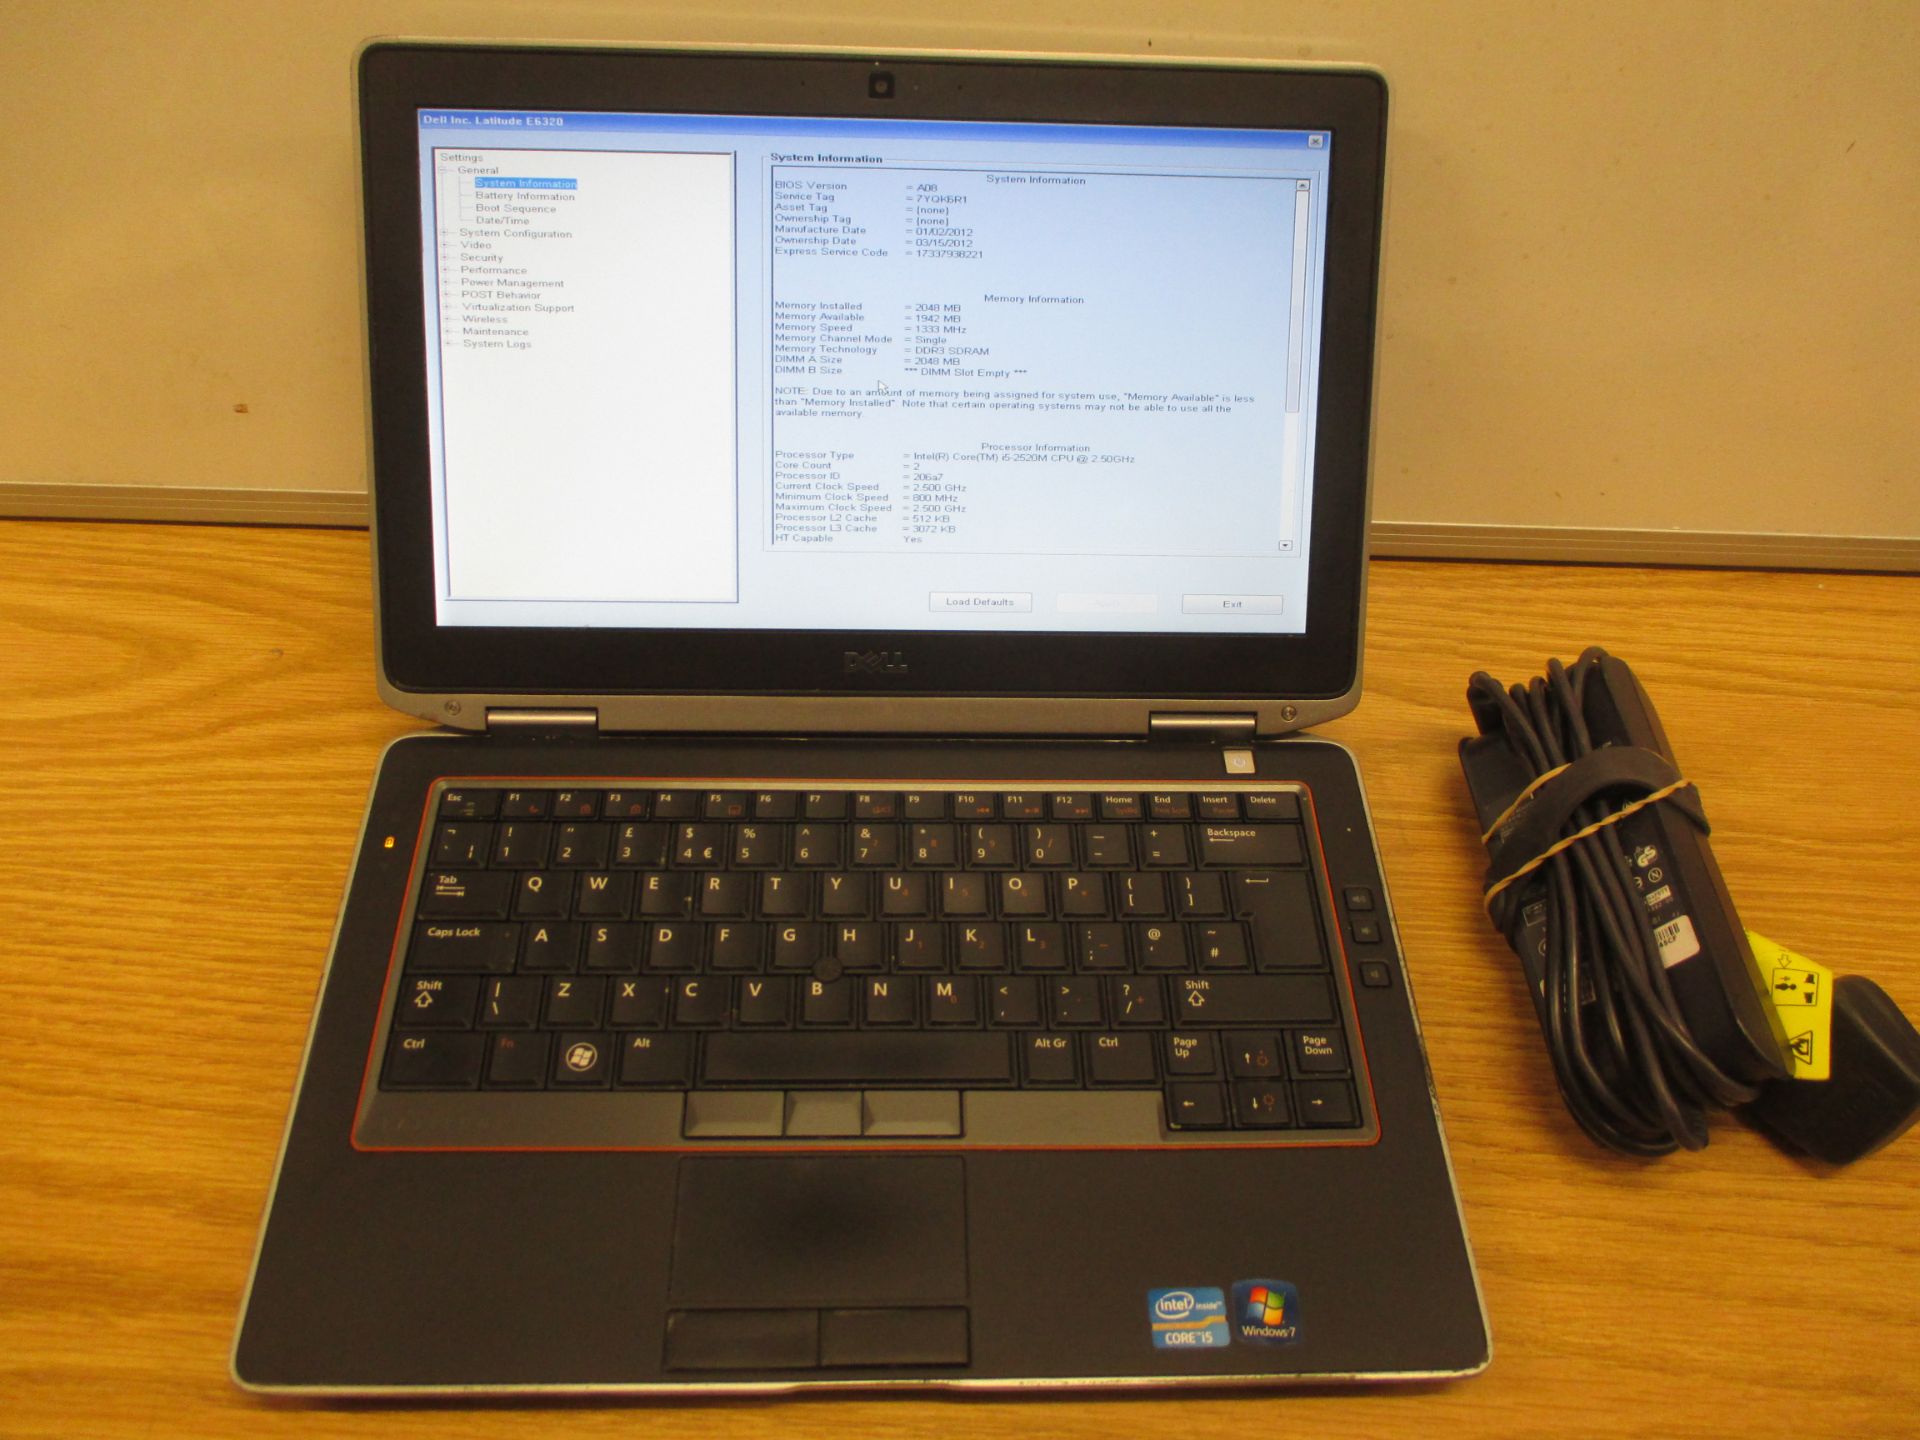 Dell Latitude E6320 Laptop, Core-i5/2.5Ghz, 2Gb Ram/250Gb HDD, DVDRW, with psu - Win 7 Ult COA